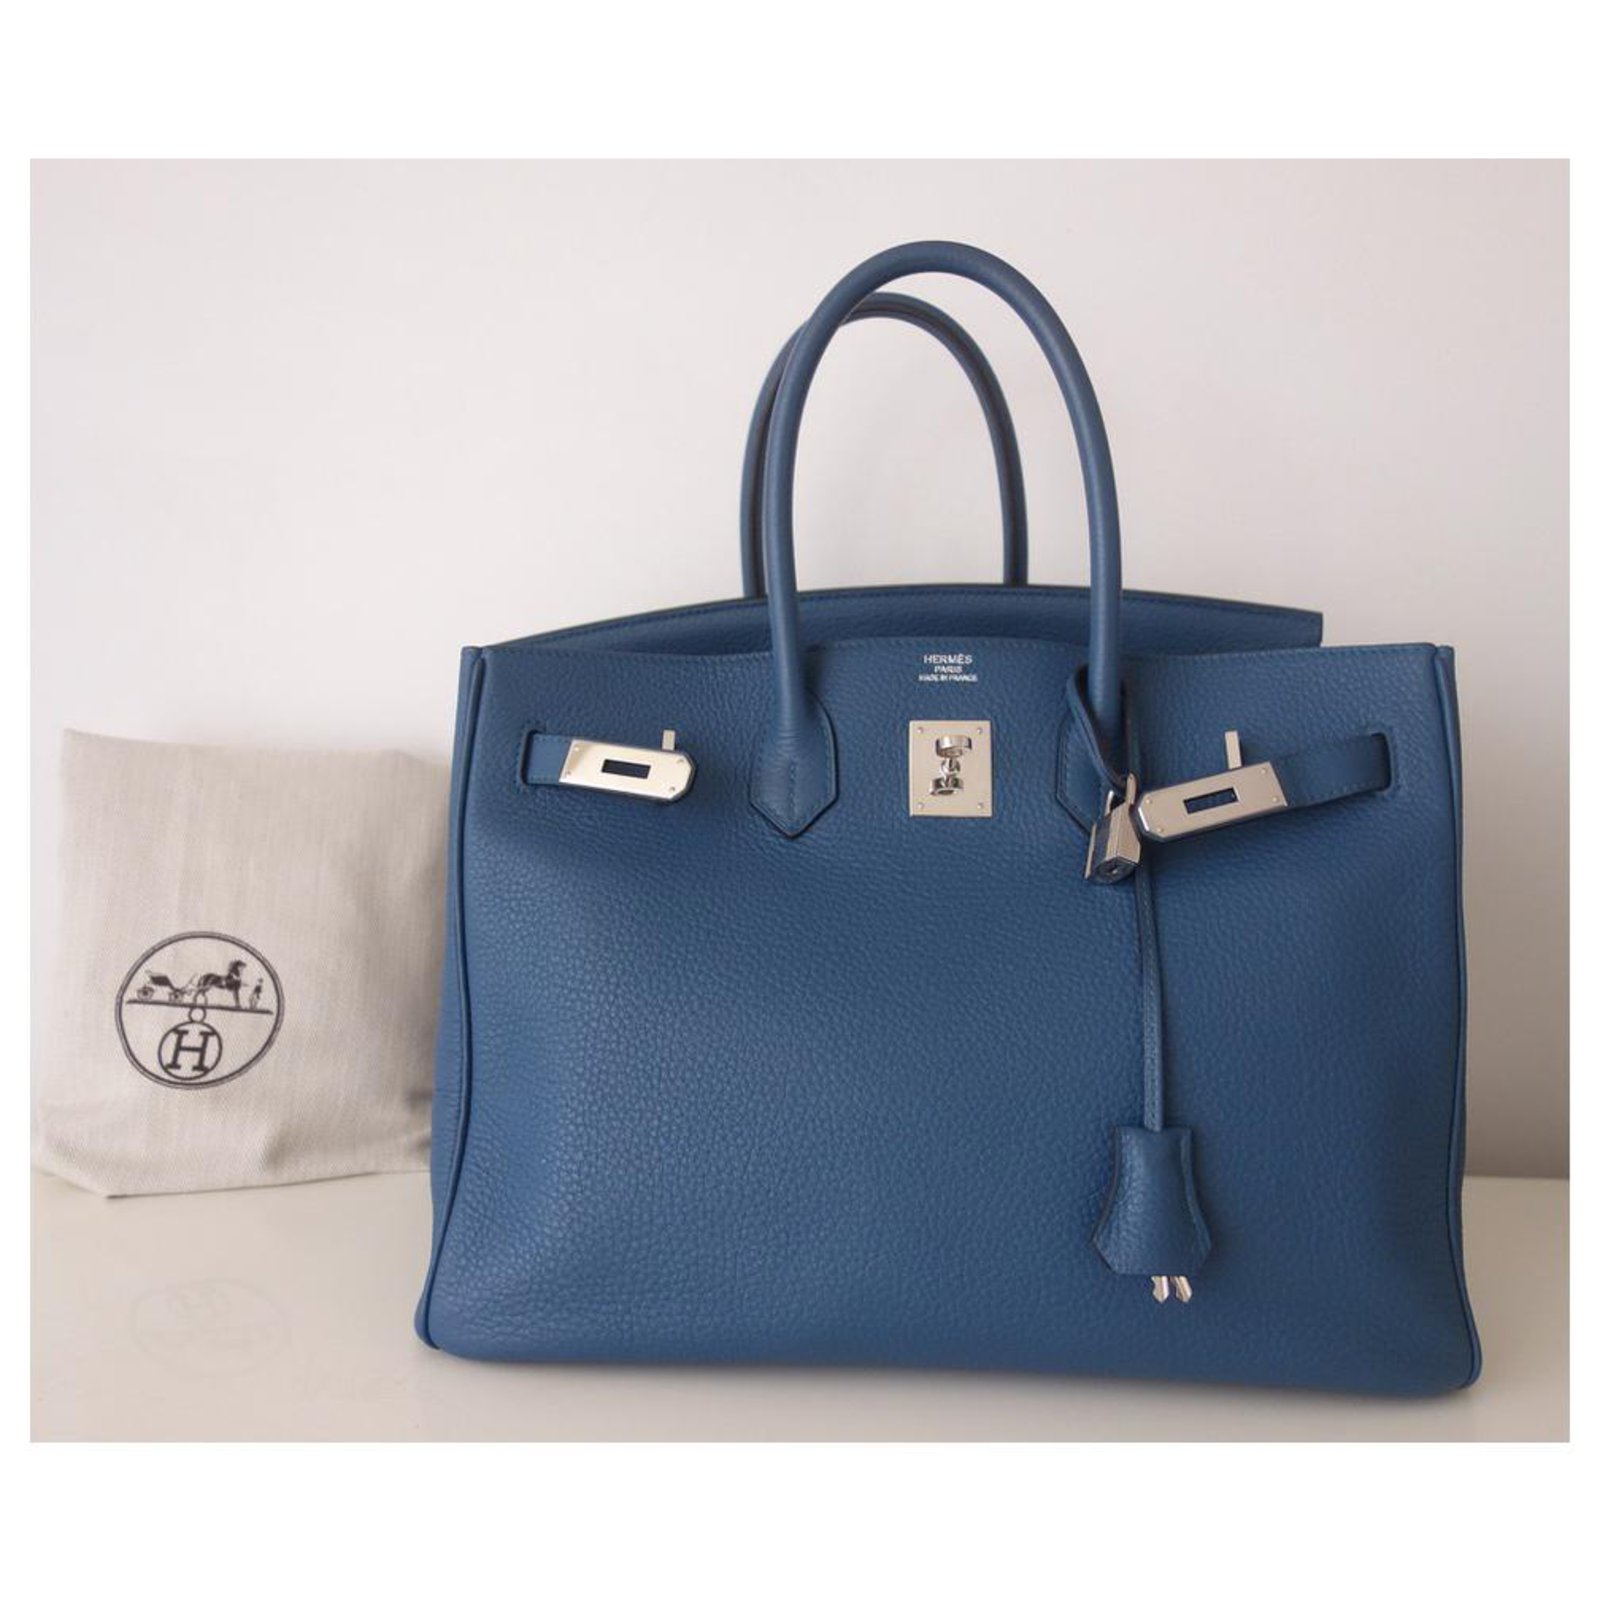 Hermès Birkin 35 Blue Thalassa